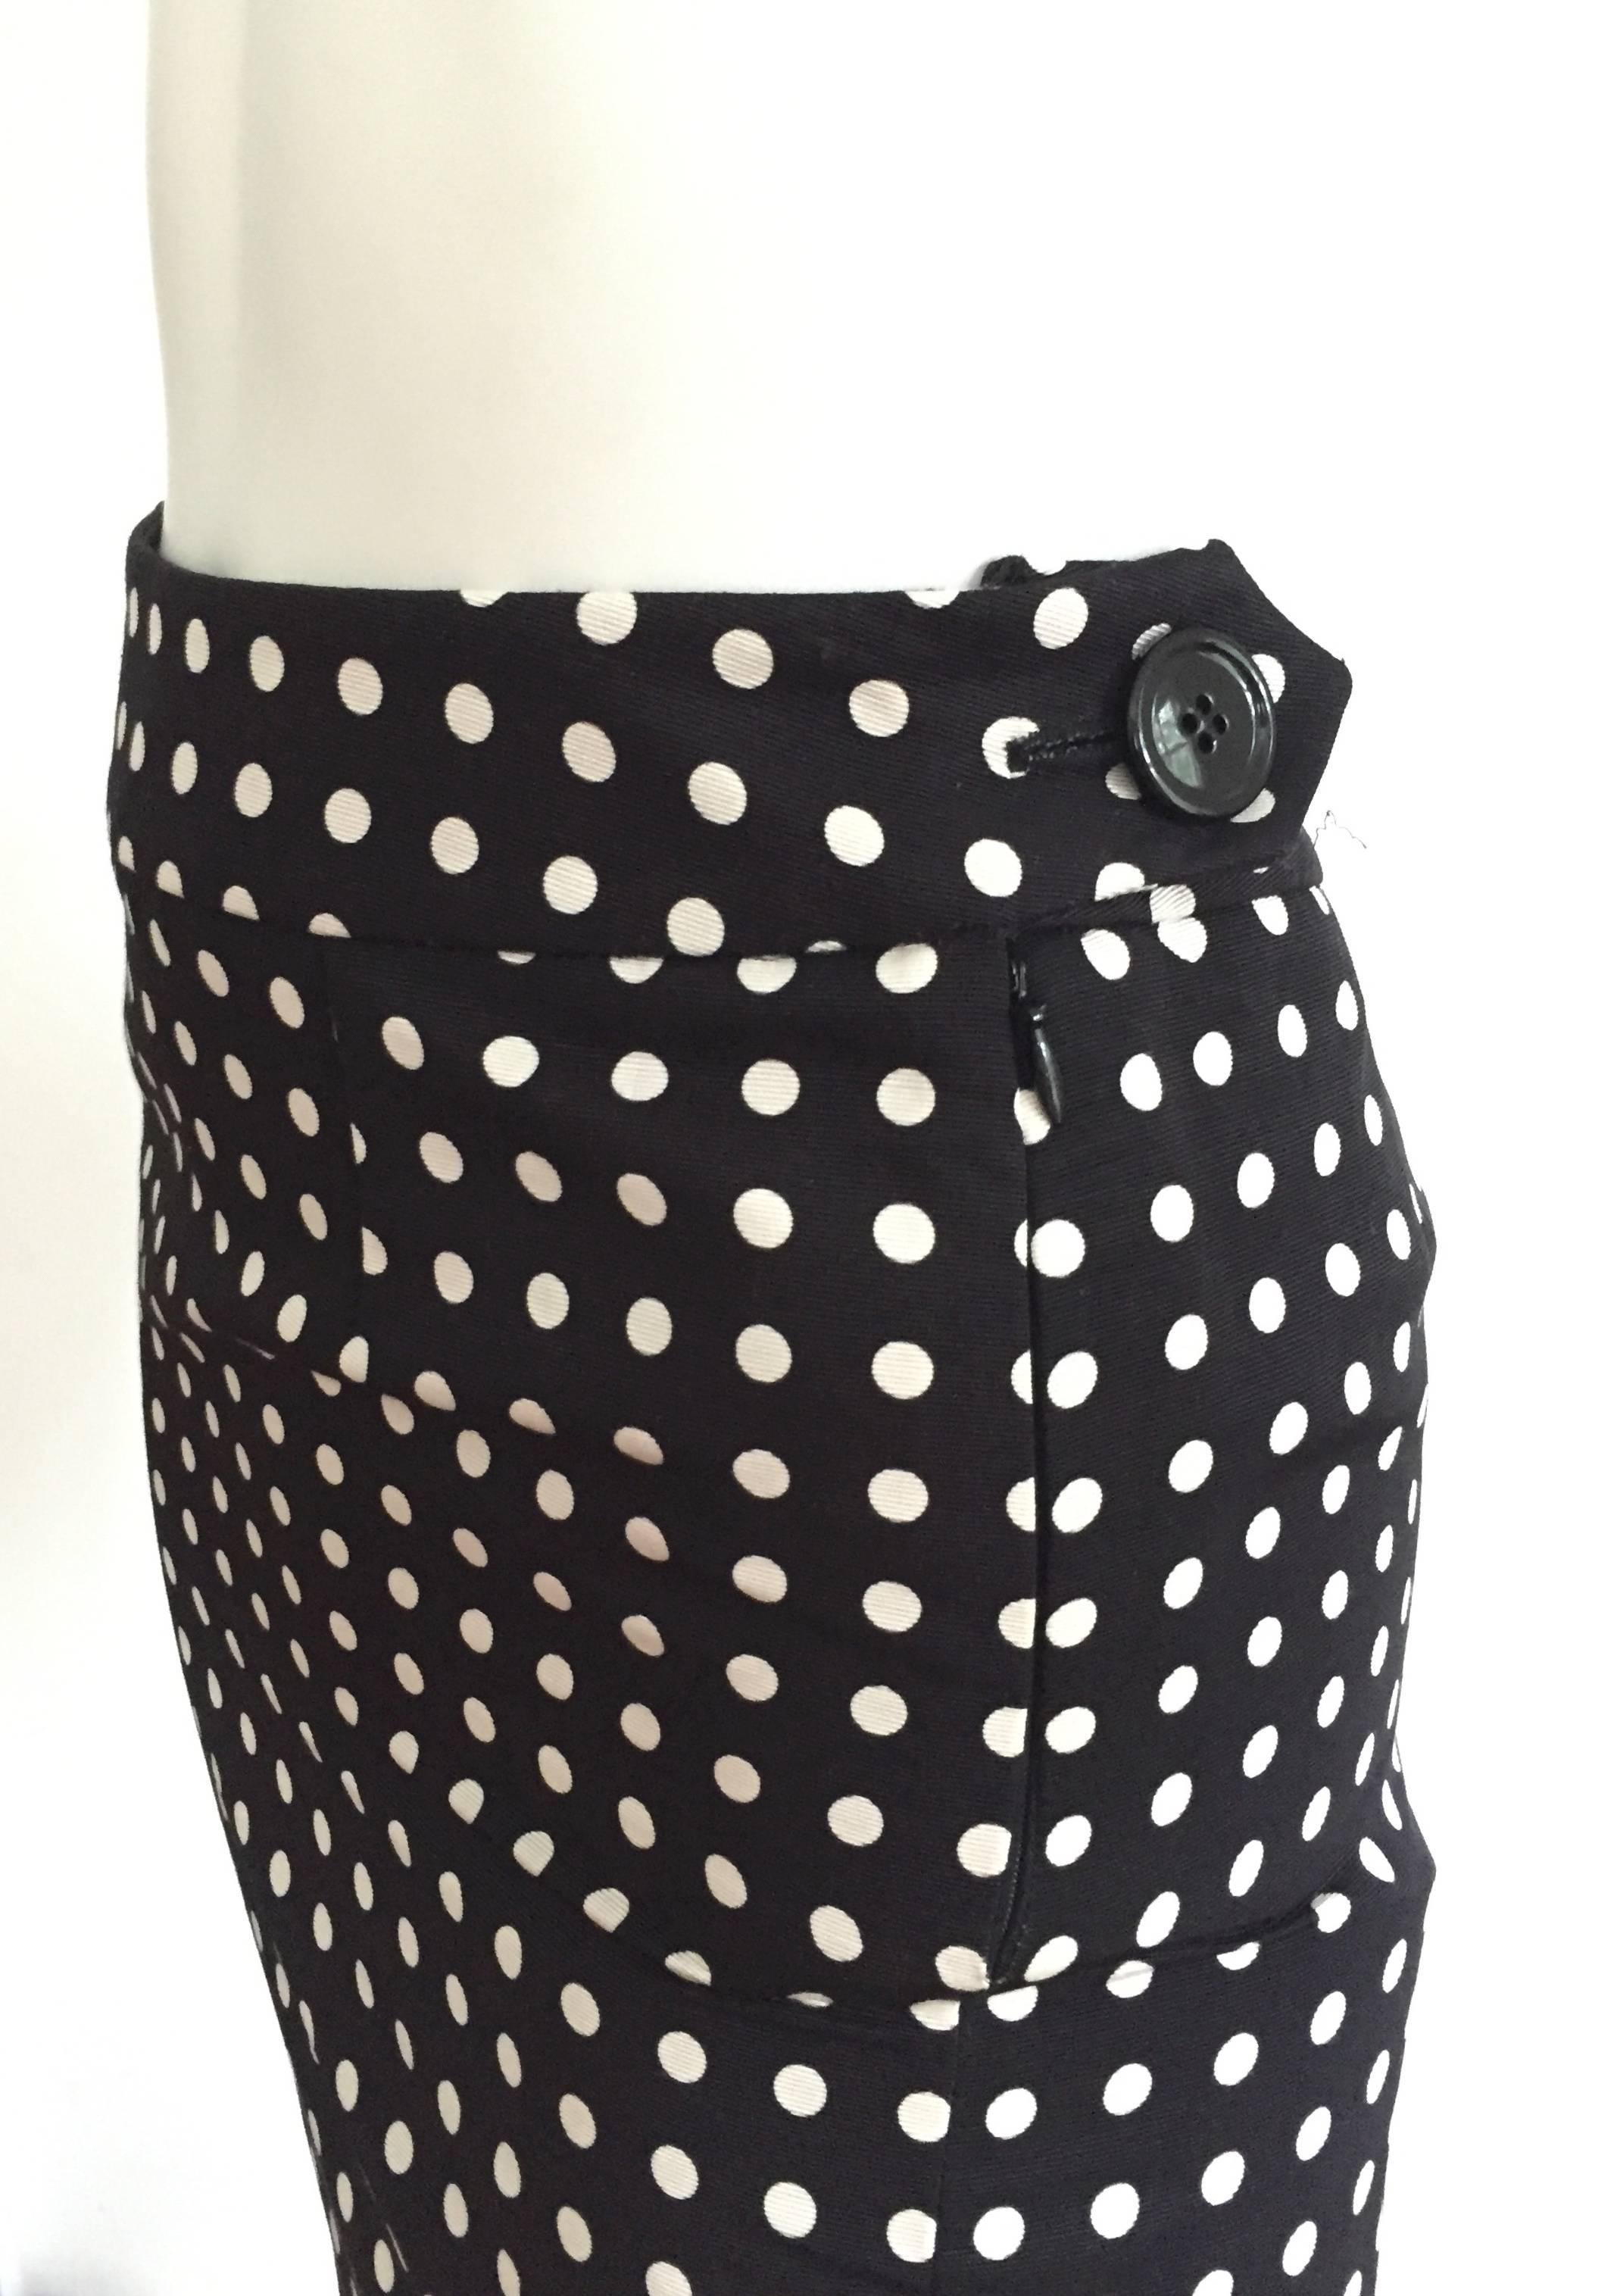 Black Yves Saint Laurent Polka Dot Skirt Size 4.